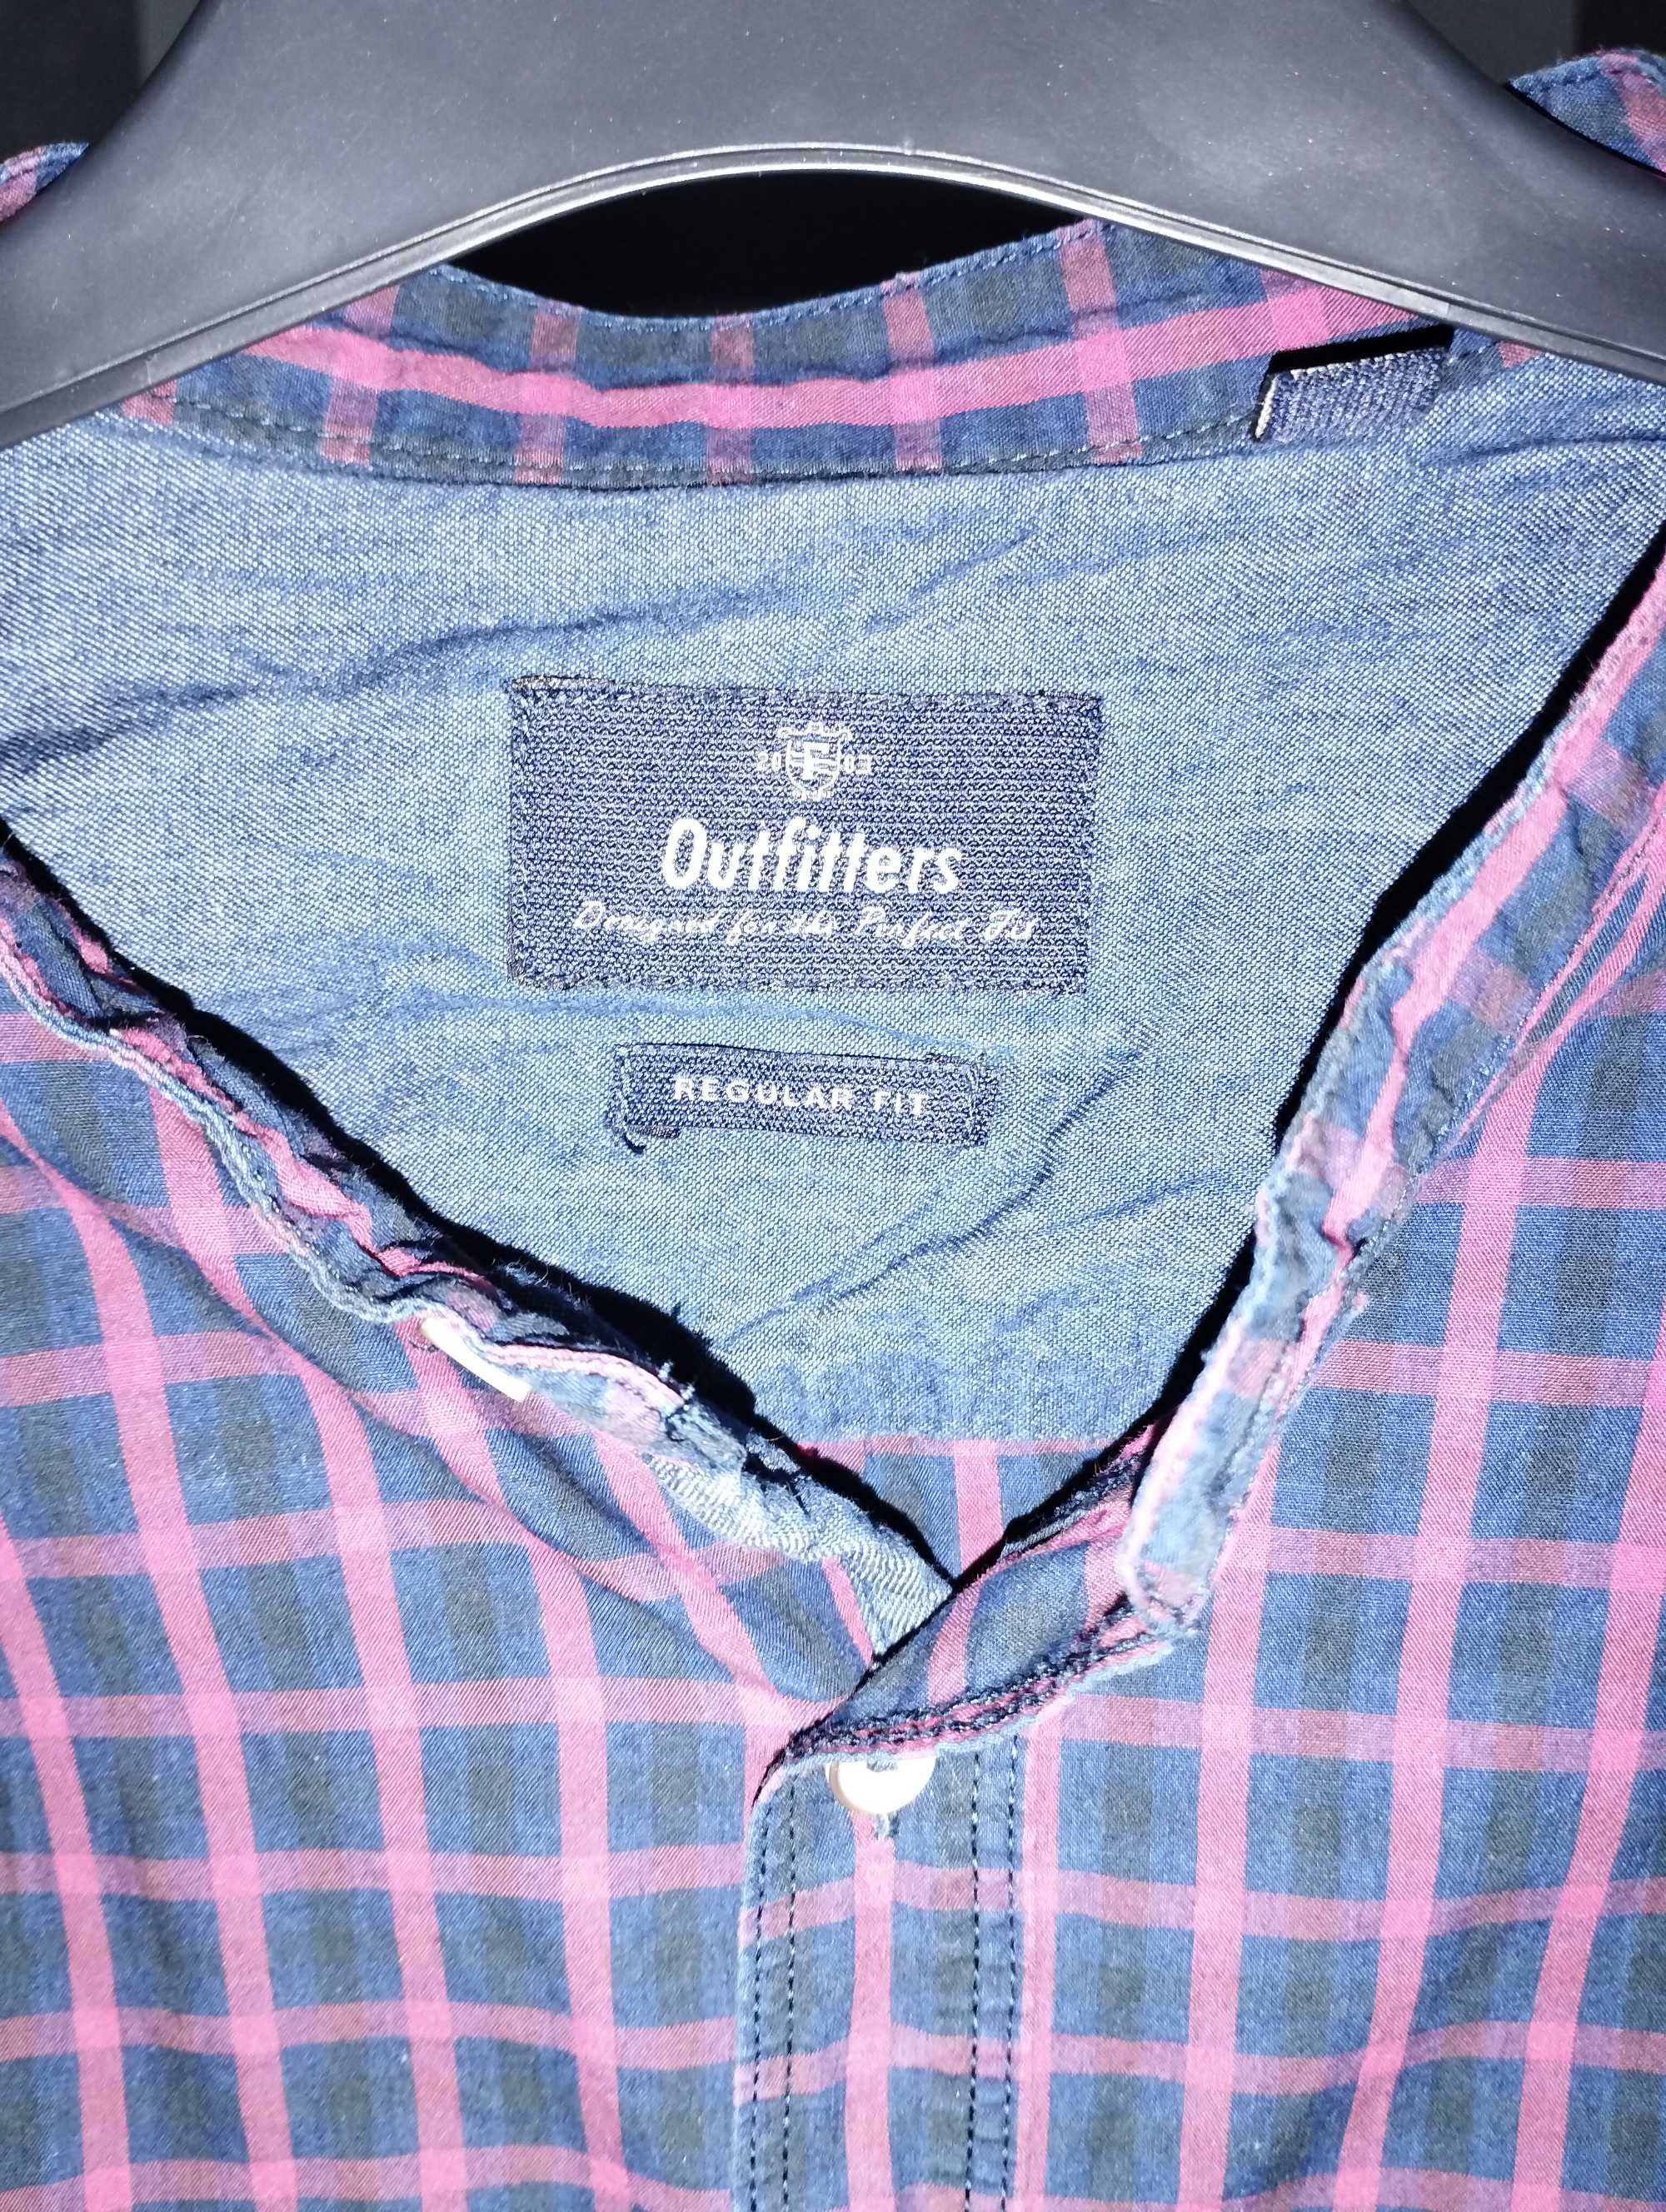 Koszula w kratę, bawełna, Outfitters, M